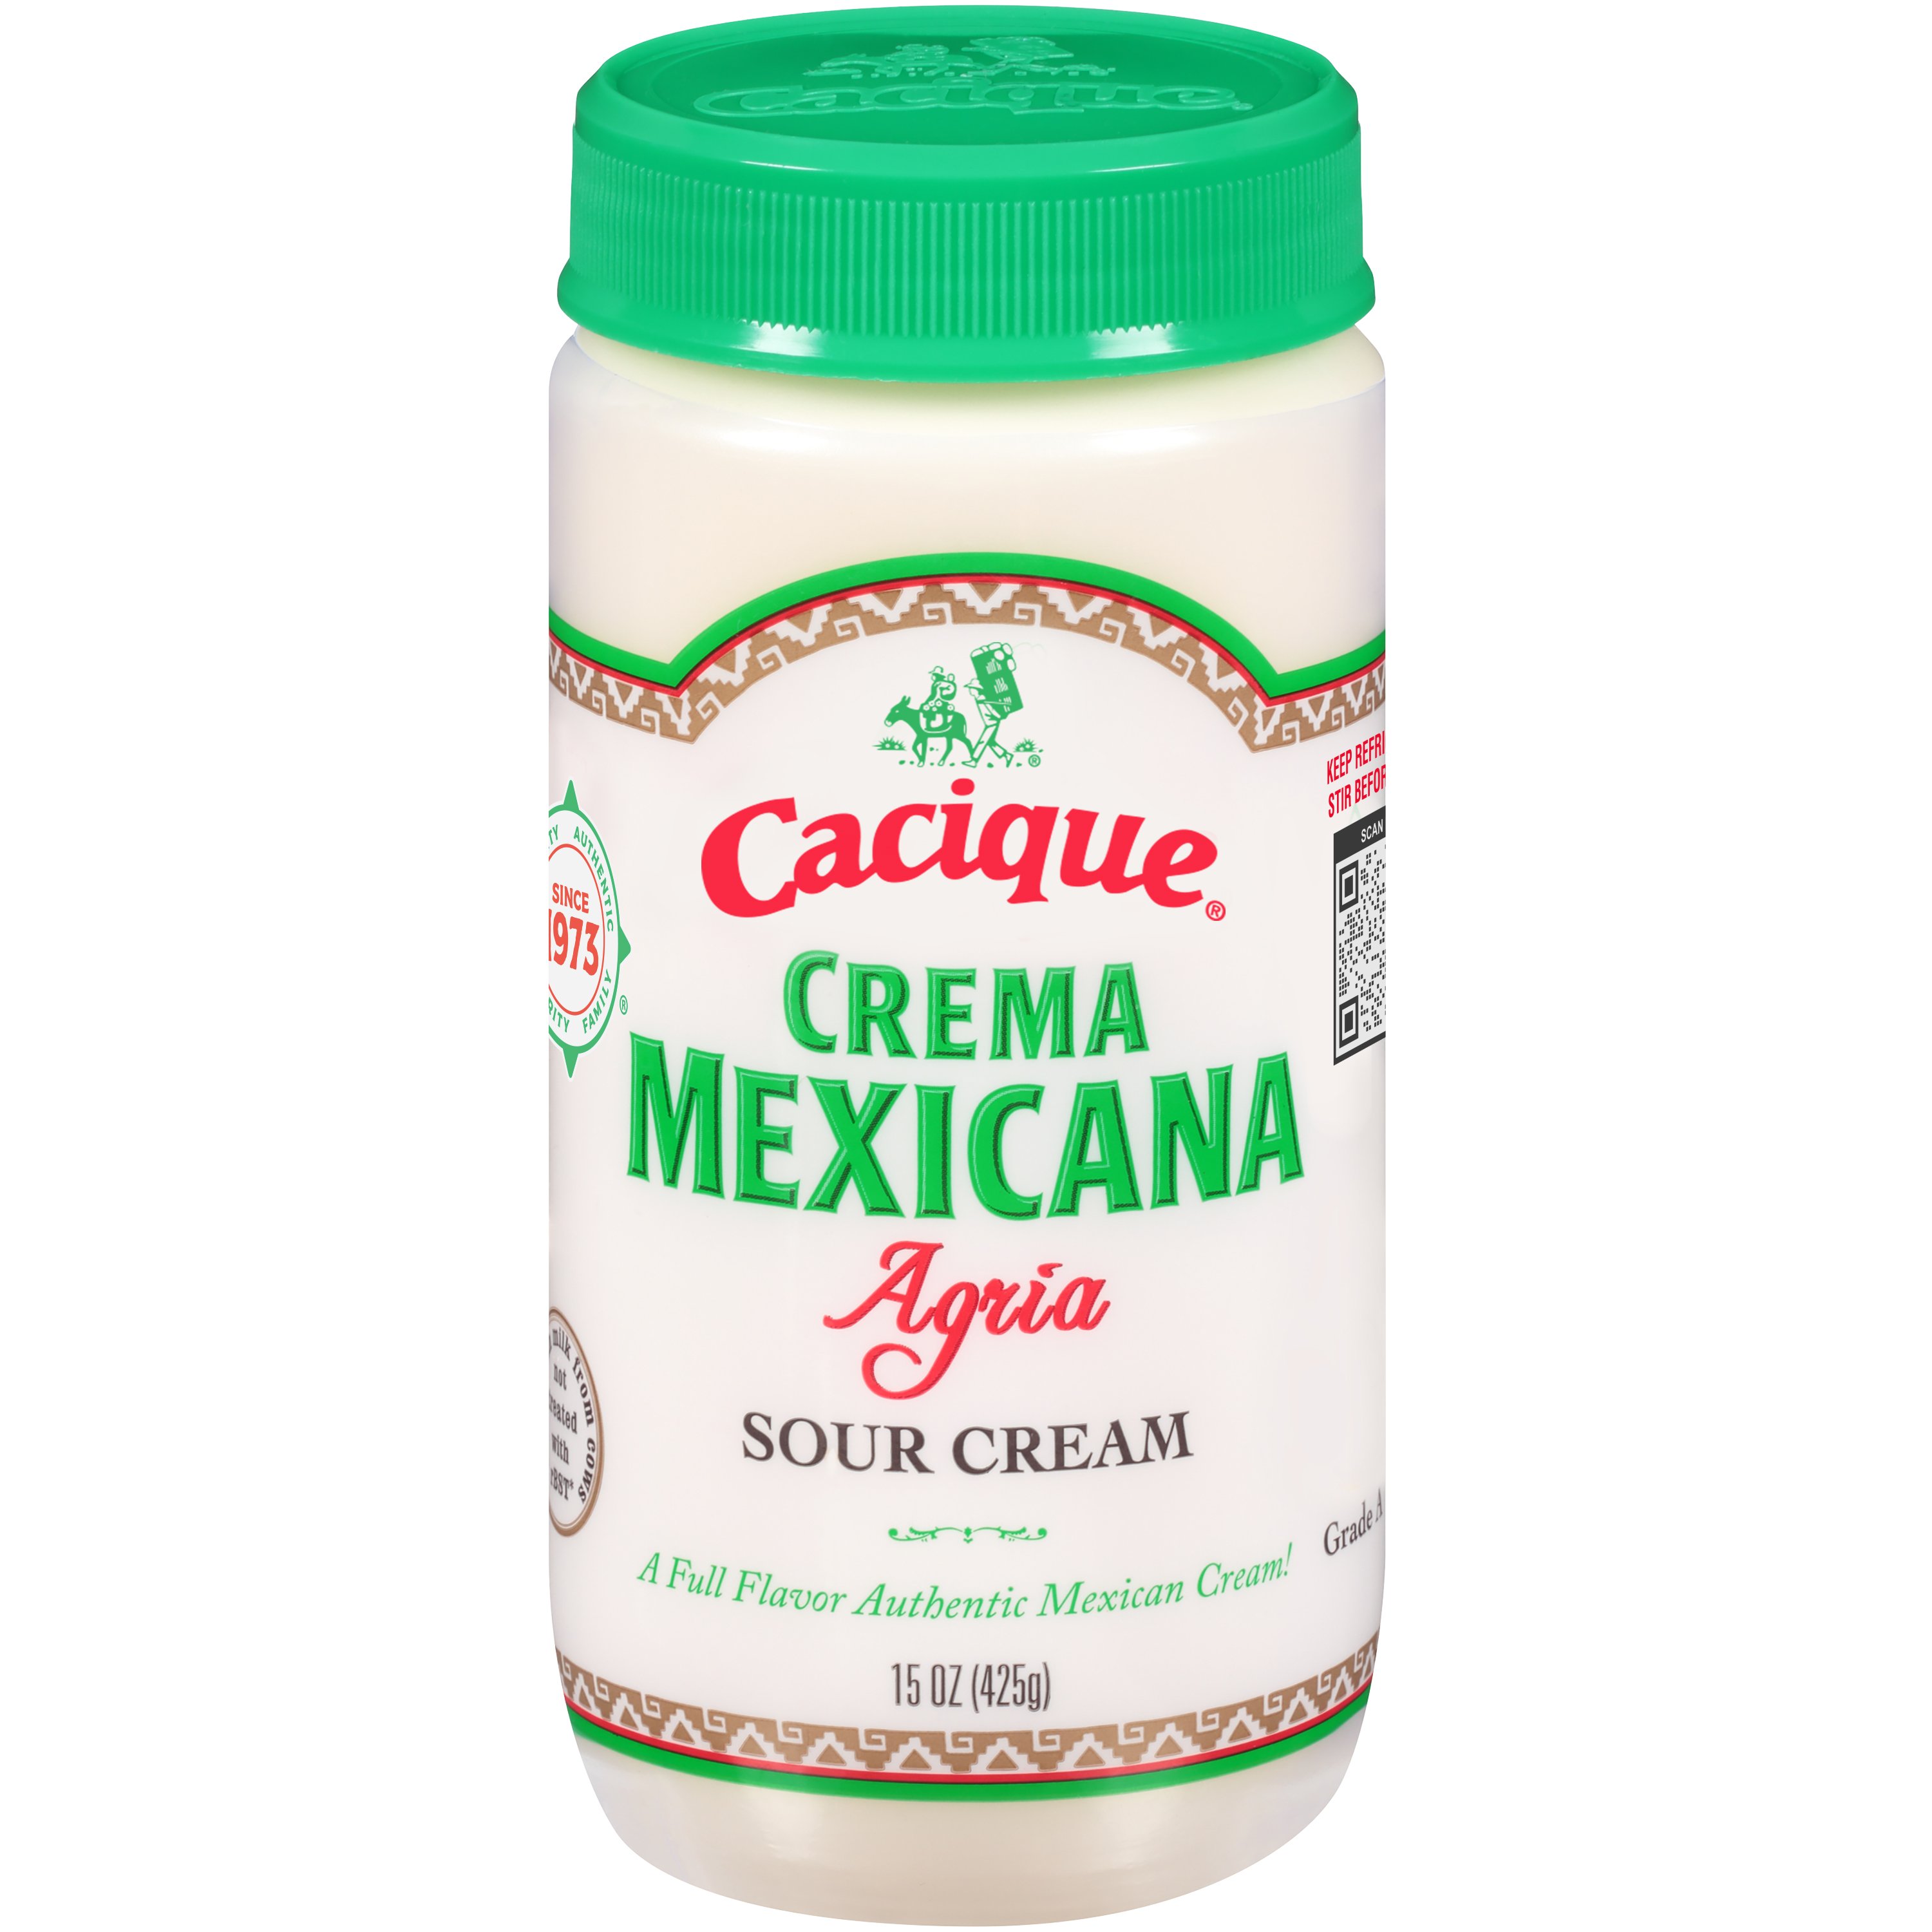 Cacique Crema Mexicana Agria Shop - Sour H-E-B Cream at Cream Sour